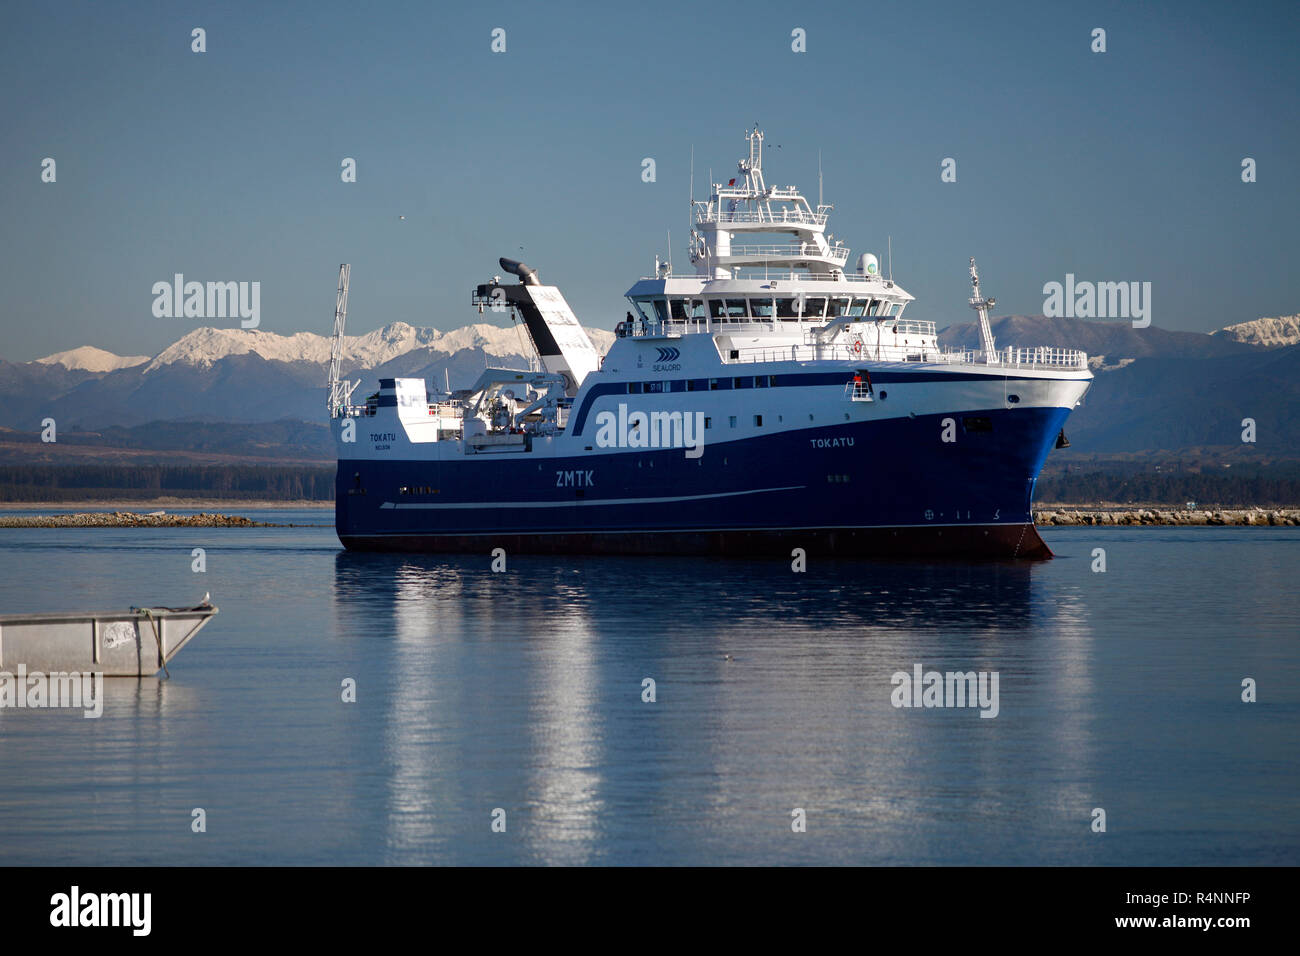 La Sealord nouveau navire de pêche Tokatu arrivant à Port Nelson, accueil Banque D'Images